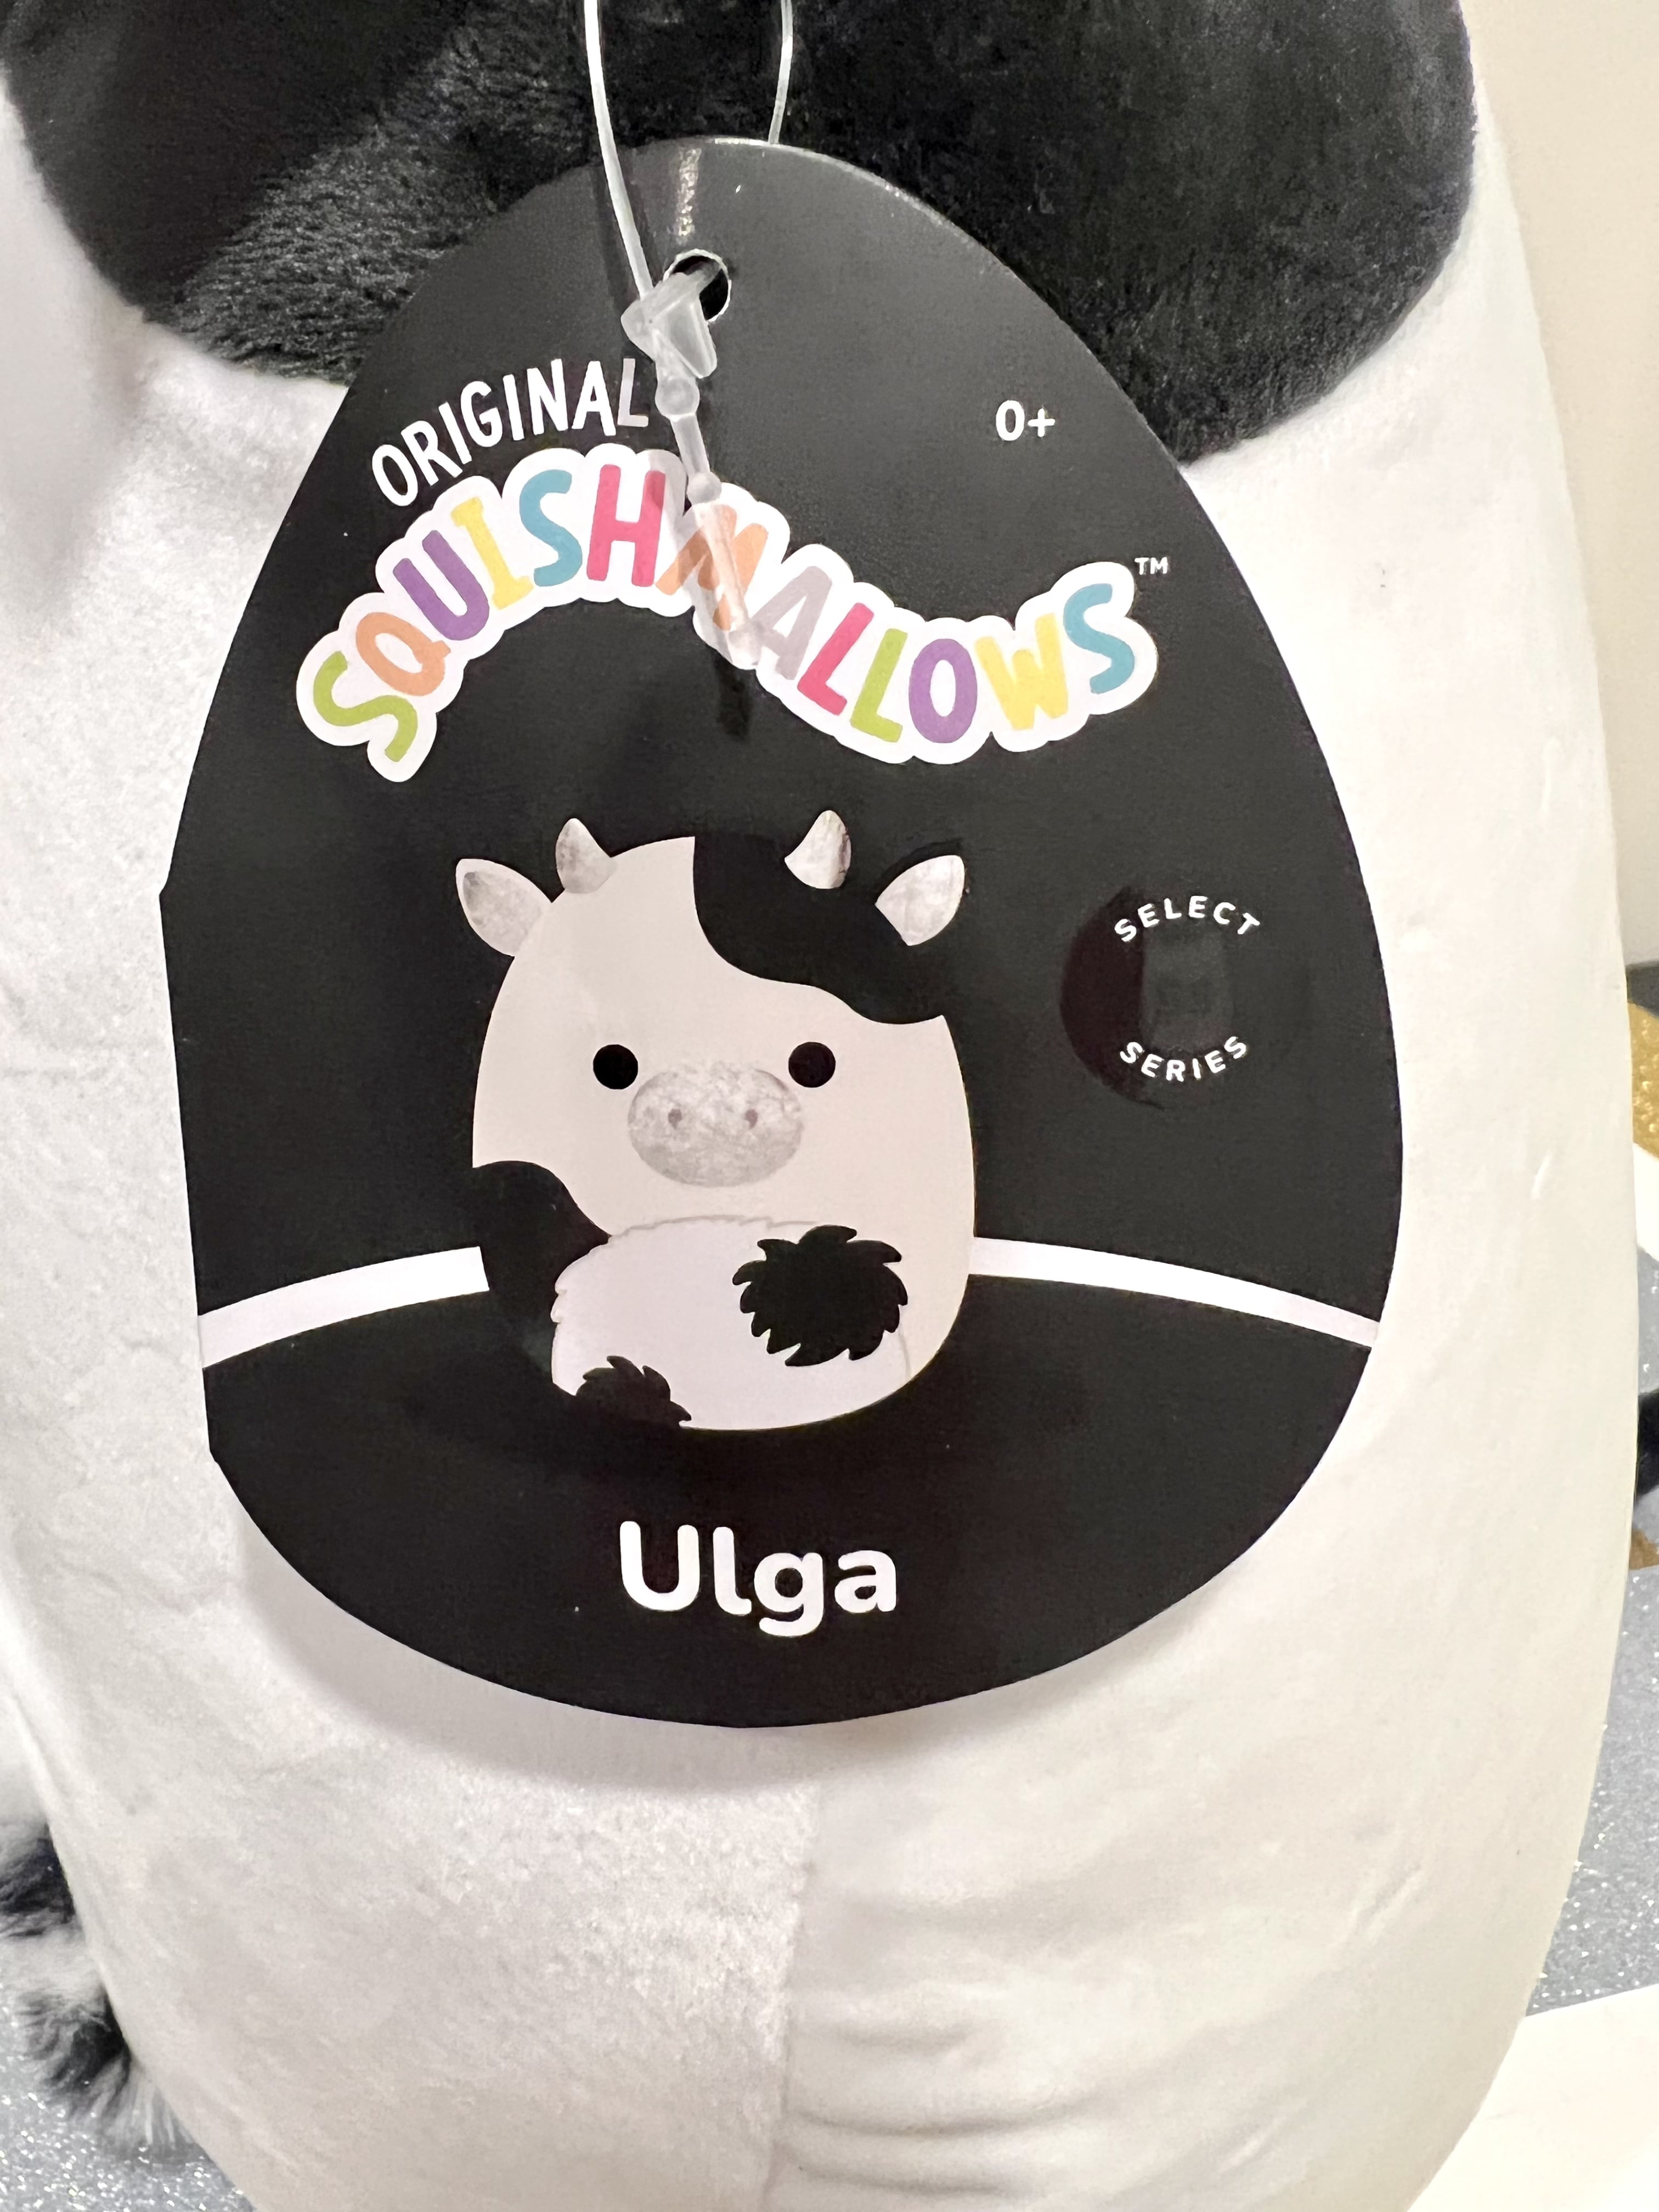 Ulga squishmallow 12